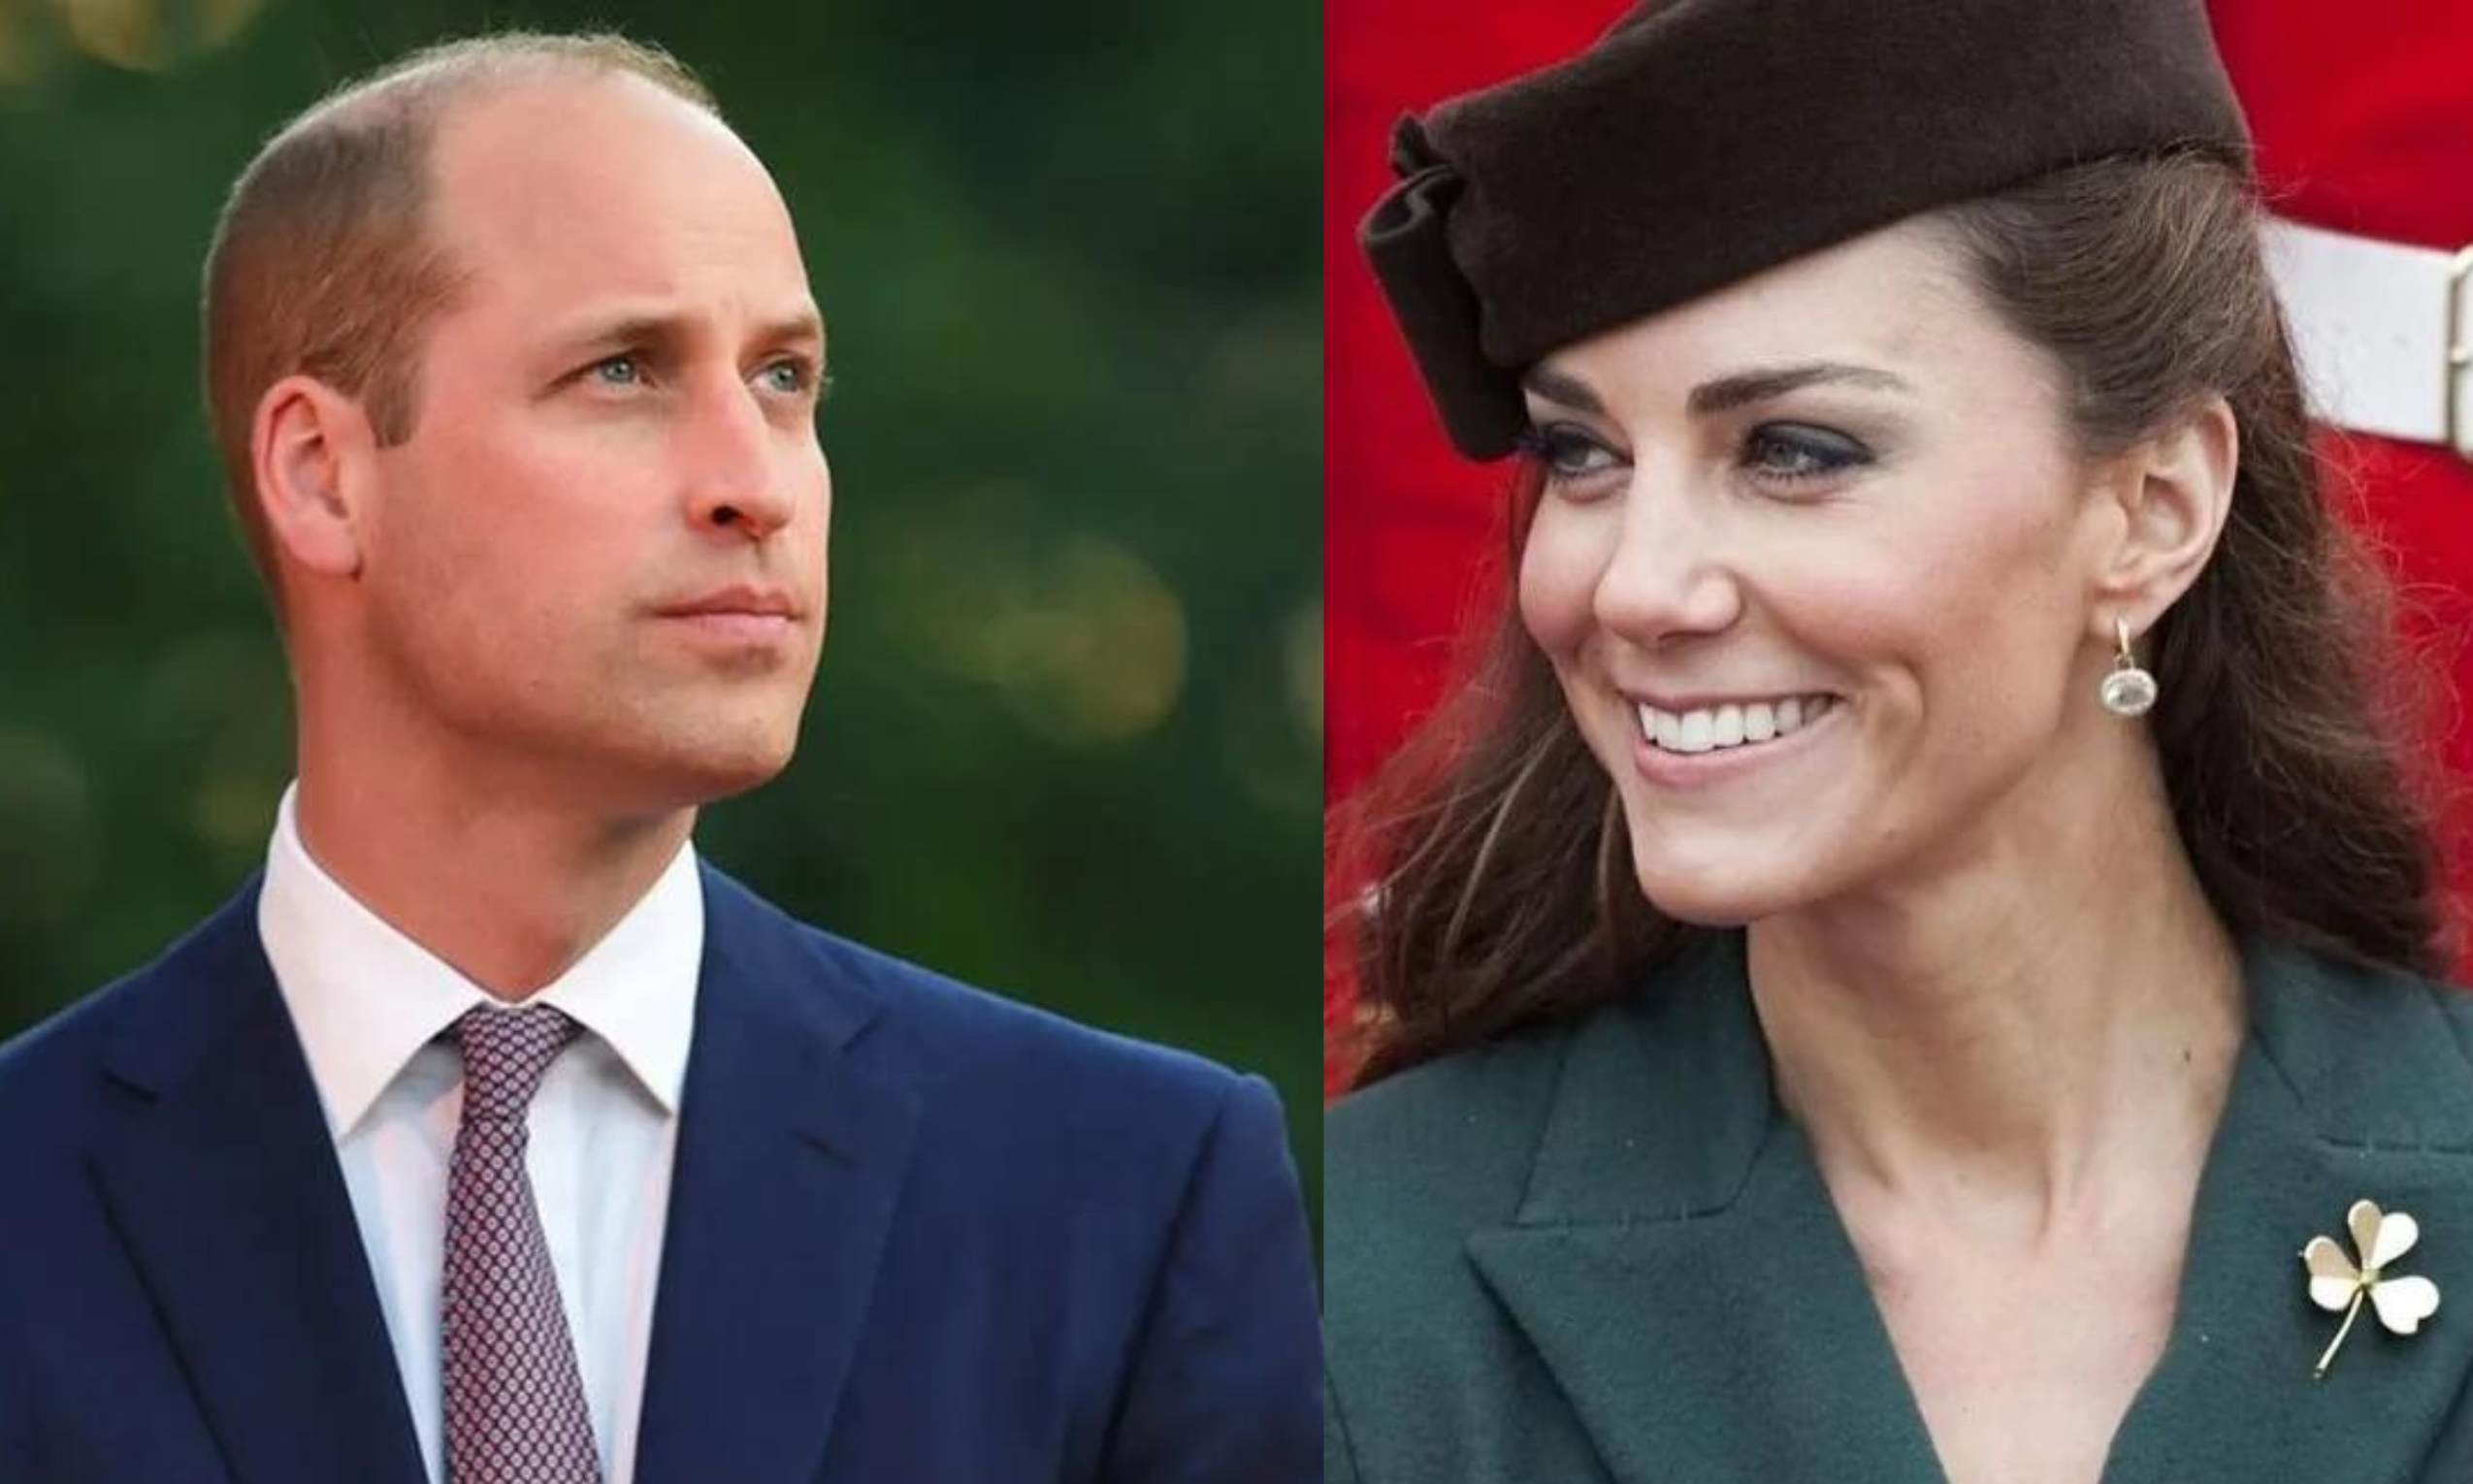 Την ώρα που η βασιλική οικογένεια προσπαθεί να αφήσει πίσω της το «PhotoGate» της Κέιτ Μίντλετον, η πριγκίπισσα της Ουαλίας εθεάθη- το Σαββατοκύριακο- με τον πρίγκιπα Ουίλιαμ να απολαμβάνουν τη βόλτα τους σε κατάστημα γεωργικών ειδών στο Γουίνδσορ.